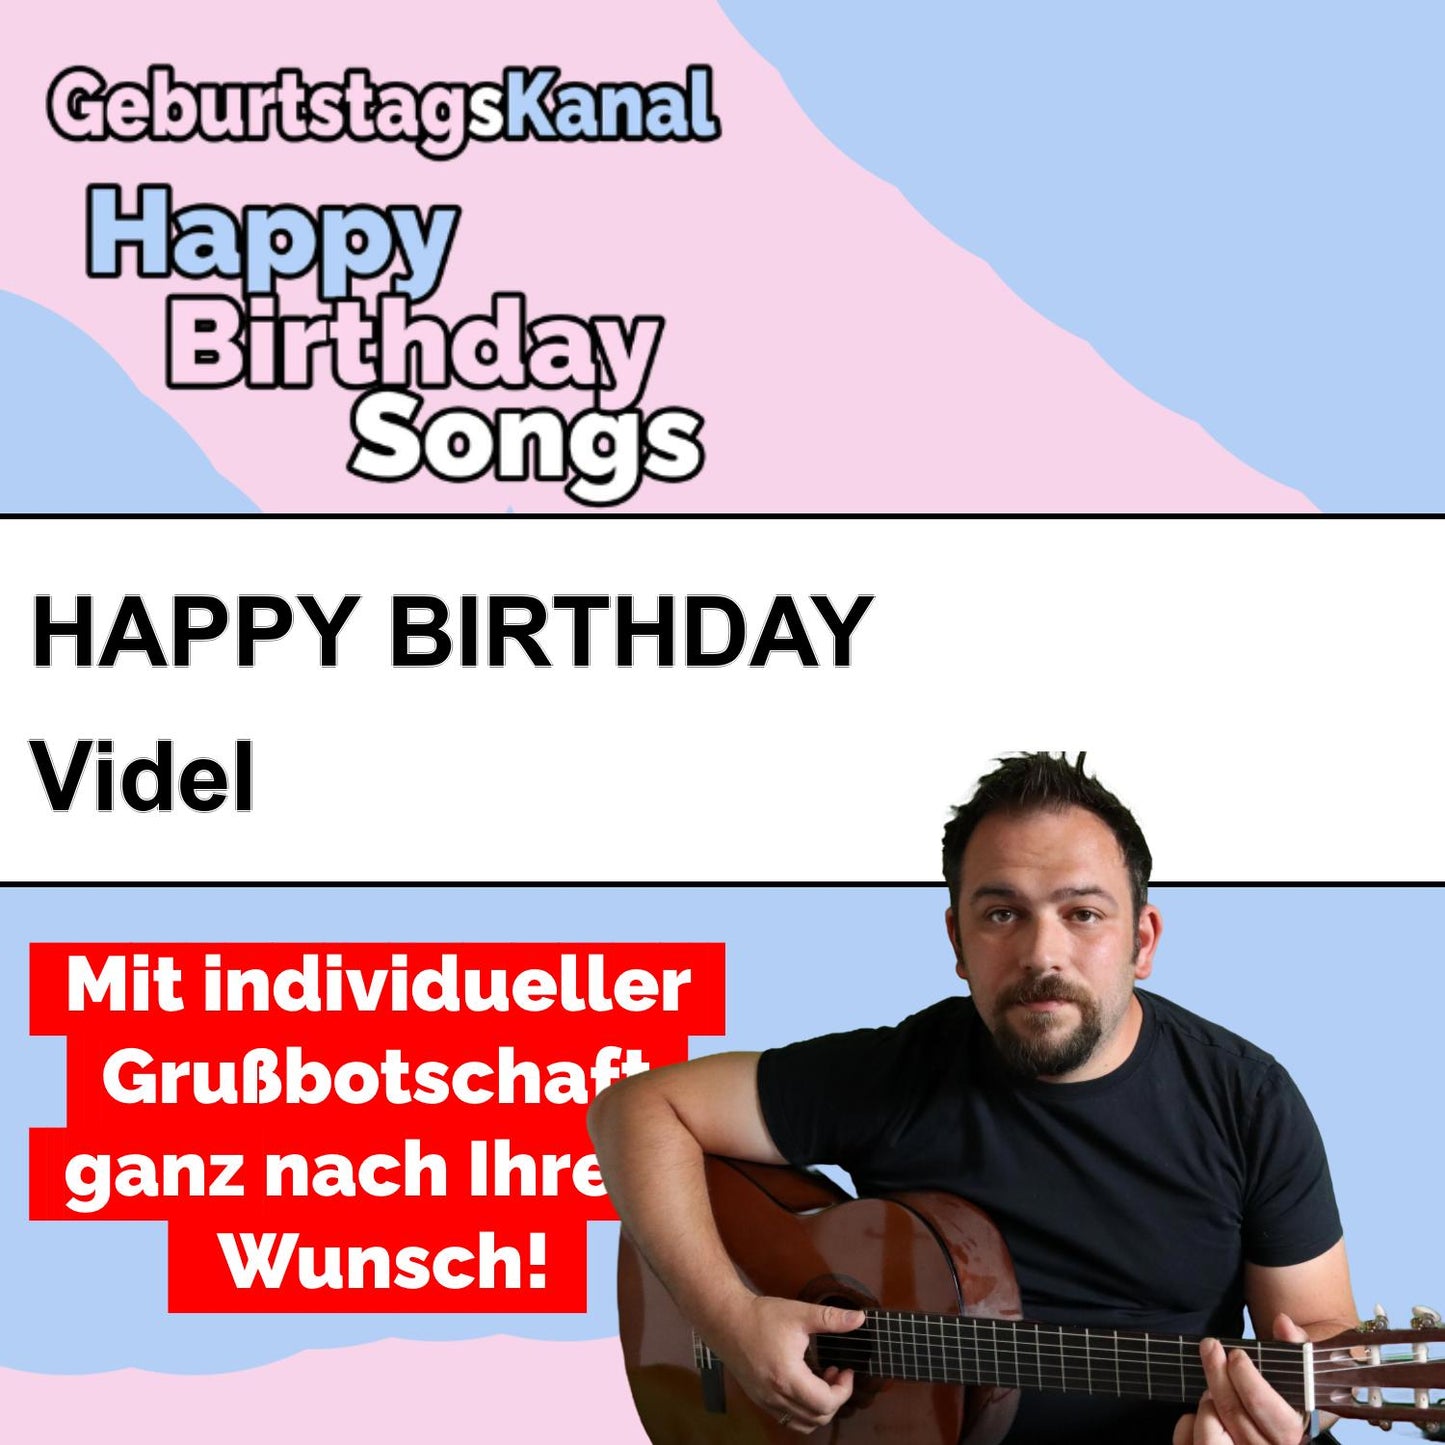 Produktbild Happy Birthday to you Videl mit Wunschgrußbotschaft